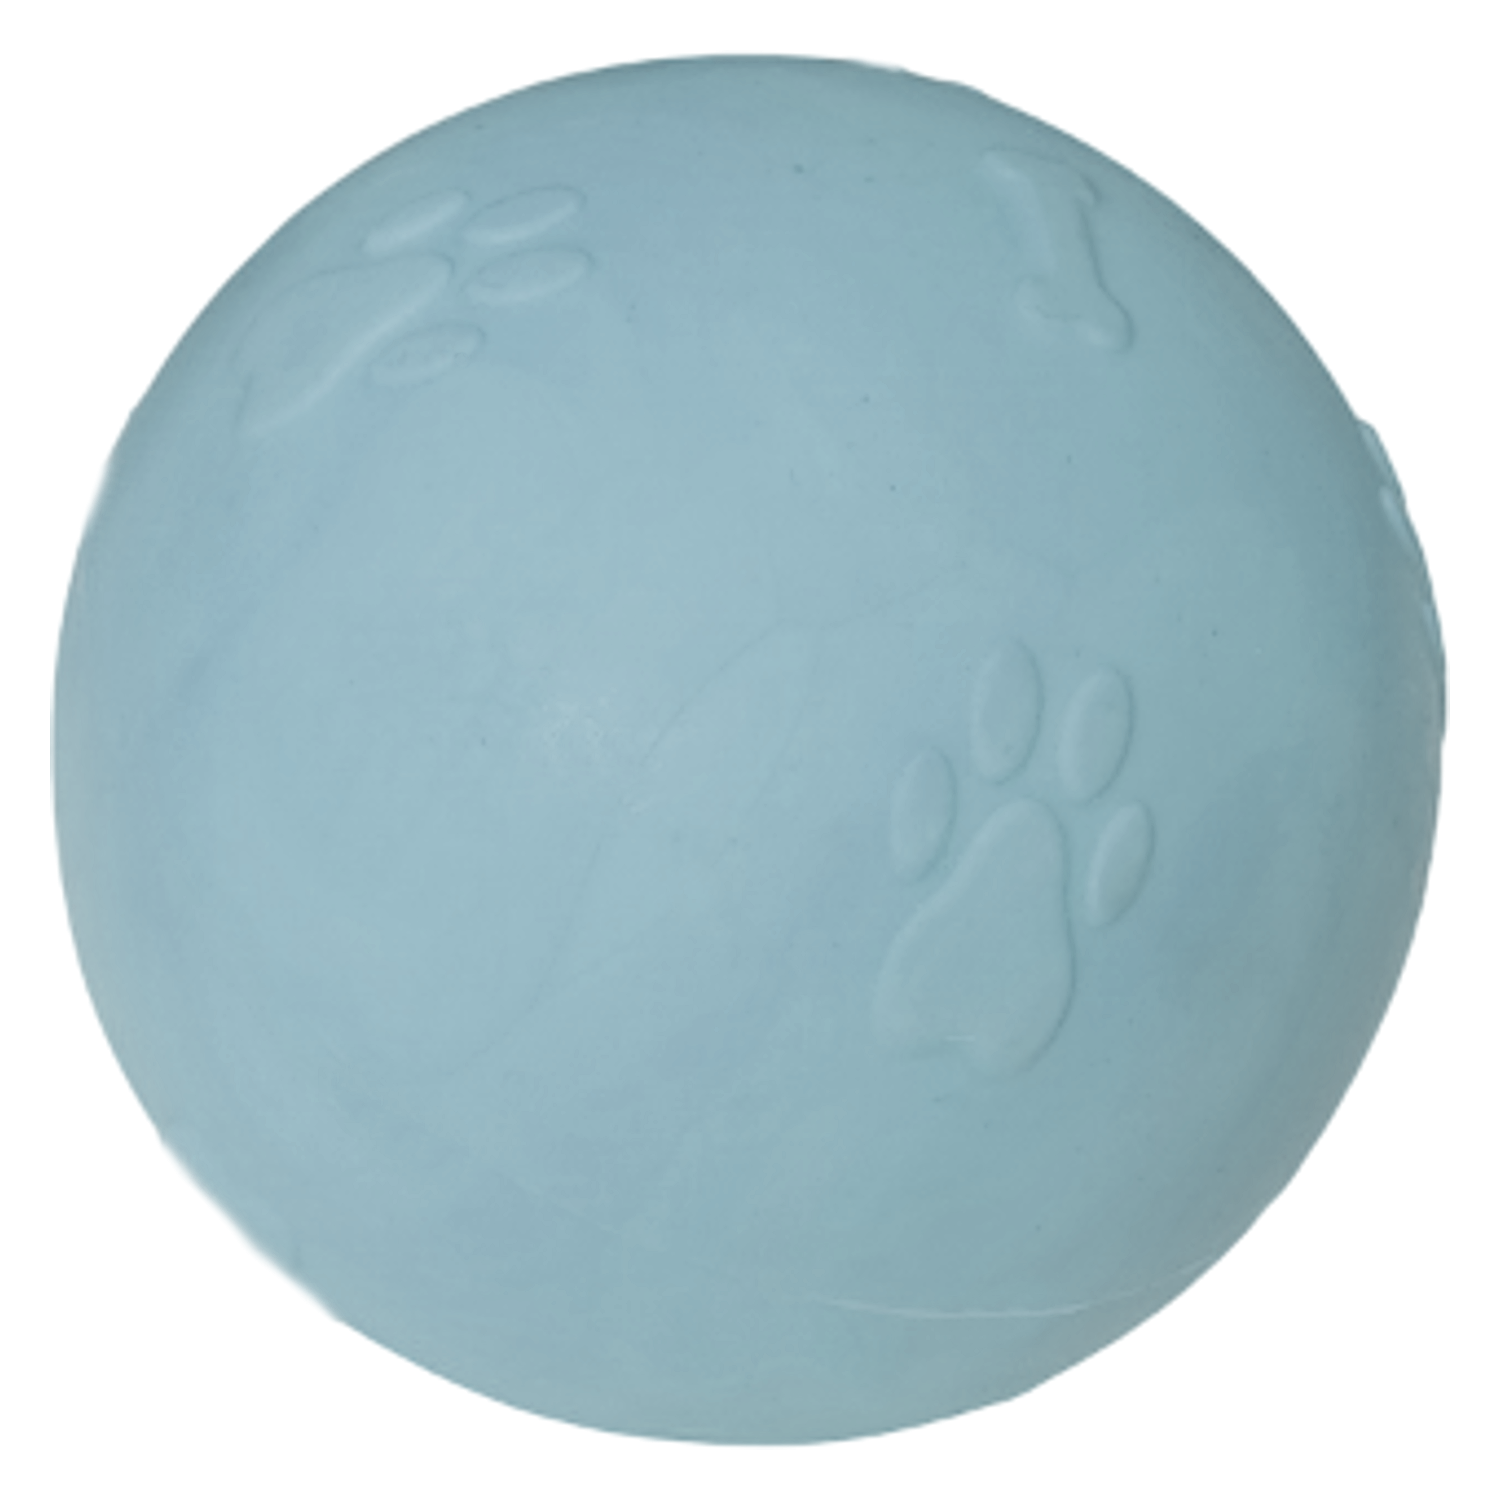 CLZ205 Pati Desenli Sert Köpek Oyun Topu 8 cm Large Açık Mavi